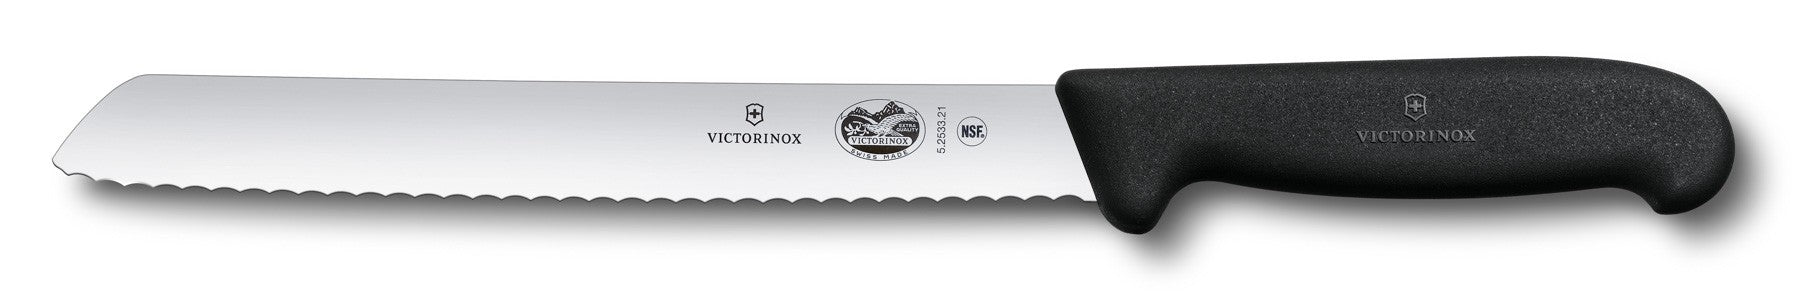 Victorinox Swiss Army Fibrox 8" Serrated Bread Knife - 40549, 47549